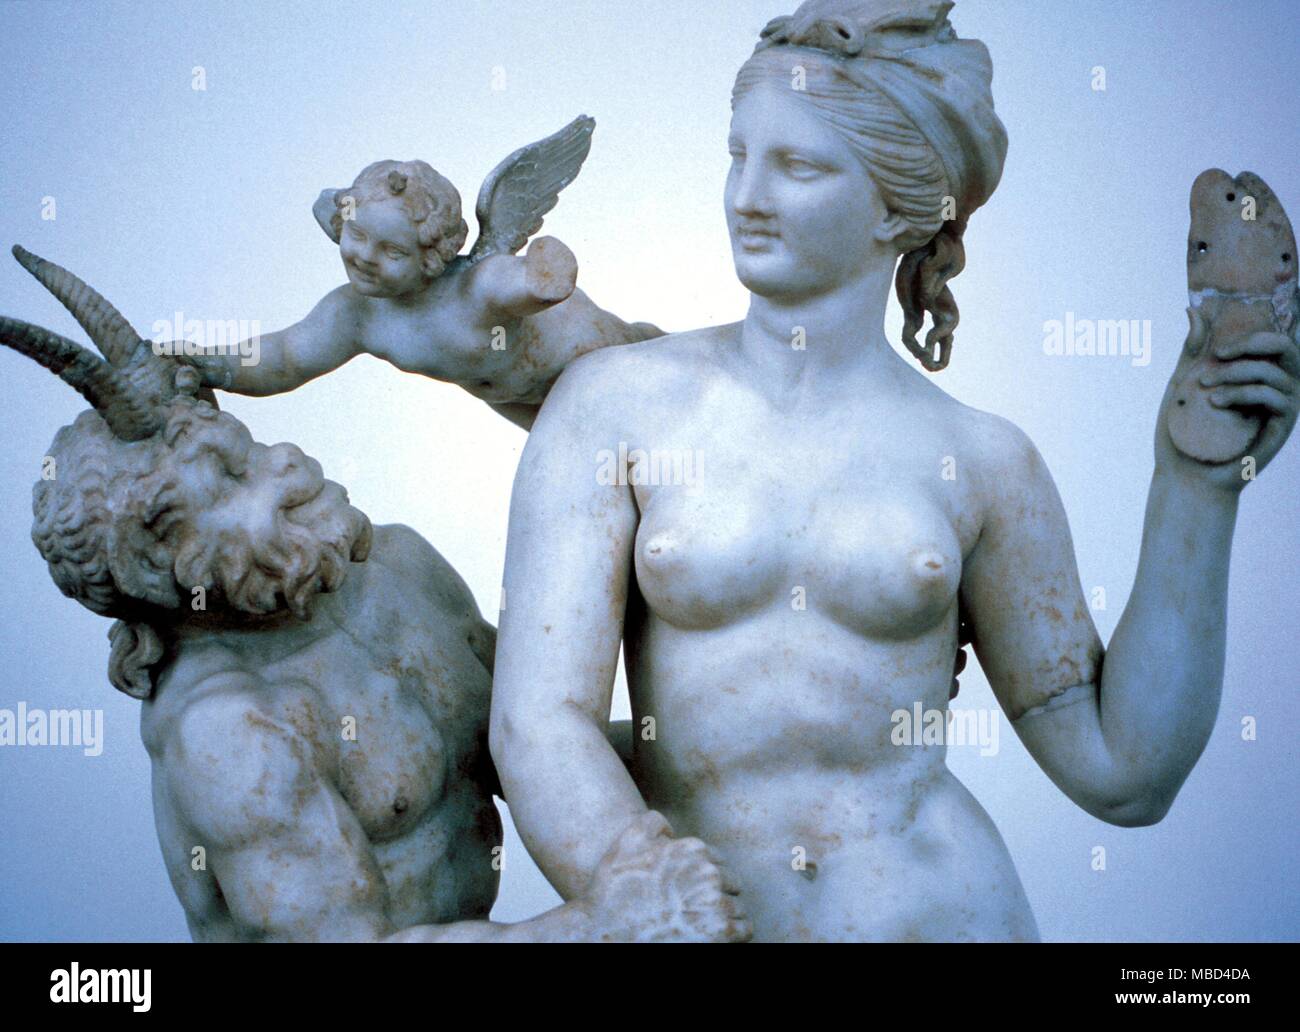 La mitología griega. Venus, Cupido y Pan. El griego antiguo estatuas de Venus, Cupido y Pan en el Museo Nacional de Atenas. A partir de la sagrada isla de Delos. Pueden ser copias romanas. Foto de stock